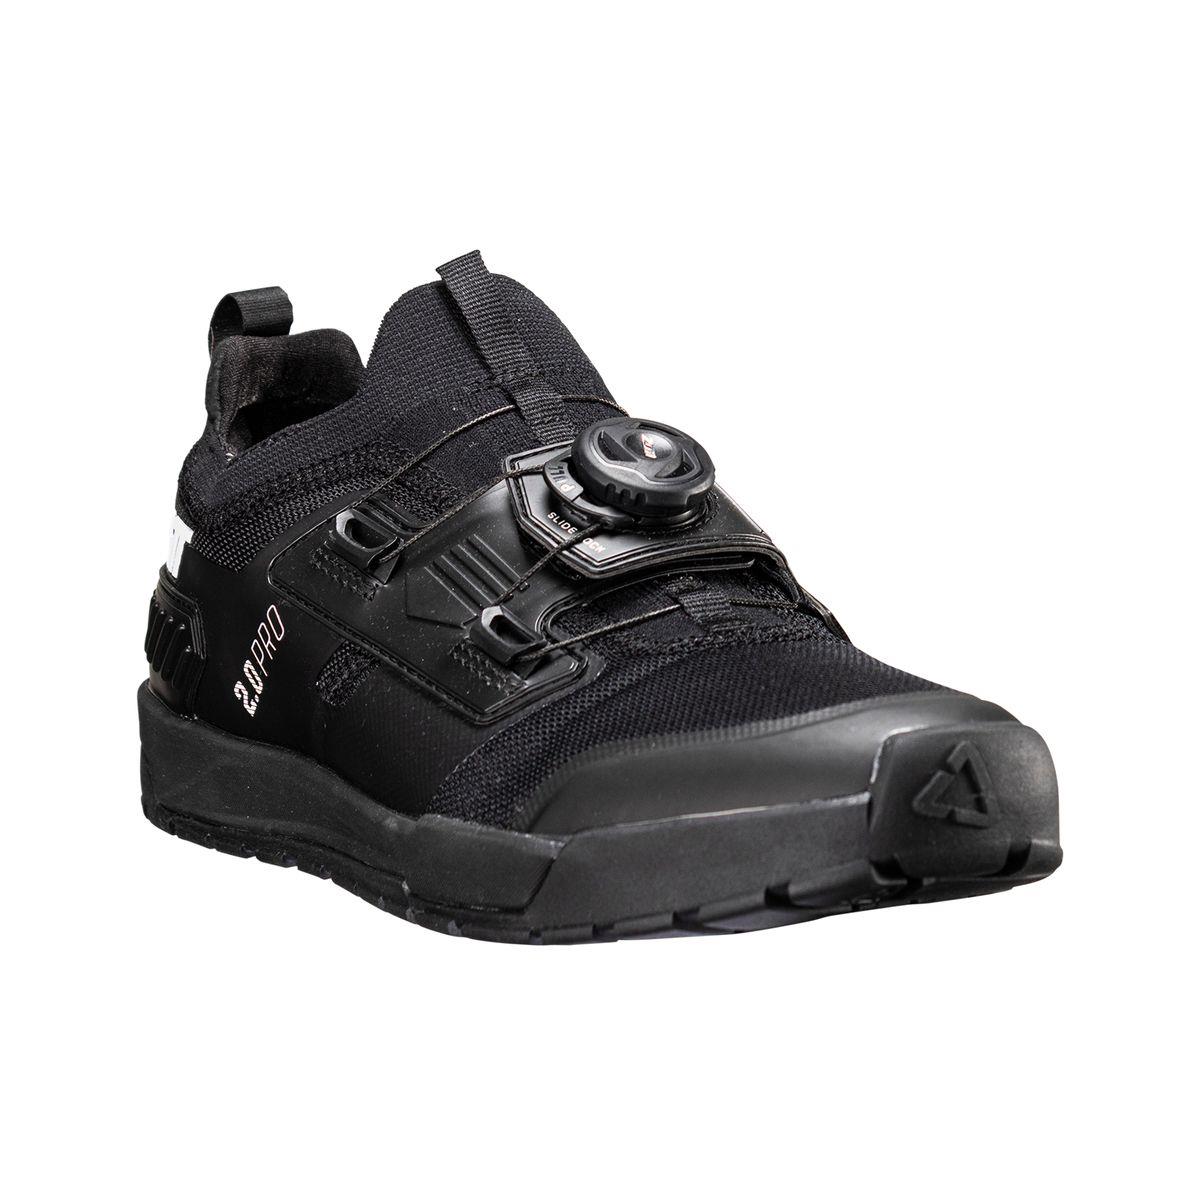 Chaussures VTT Pro Flat 2.0 noir taille 38,5